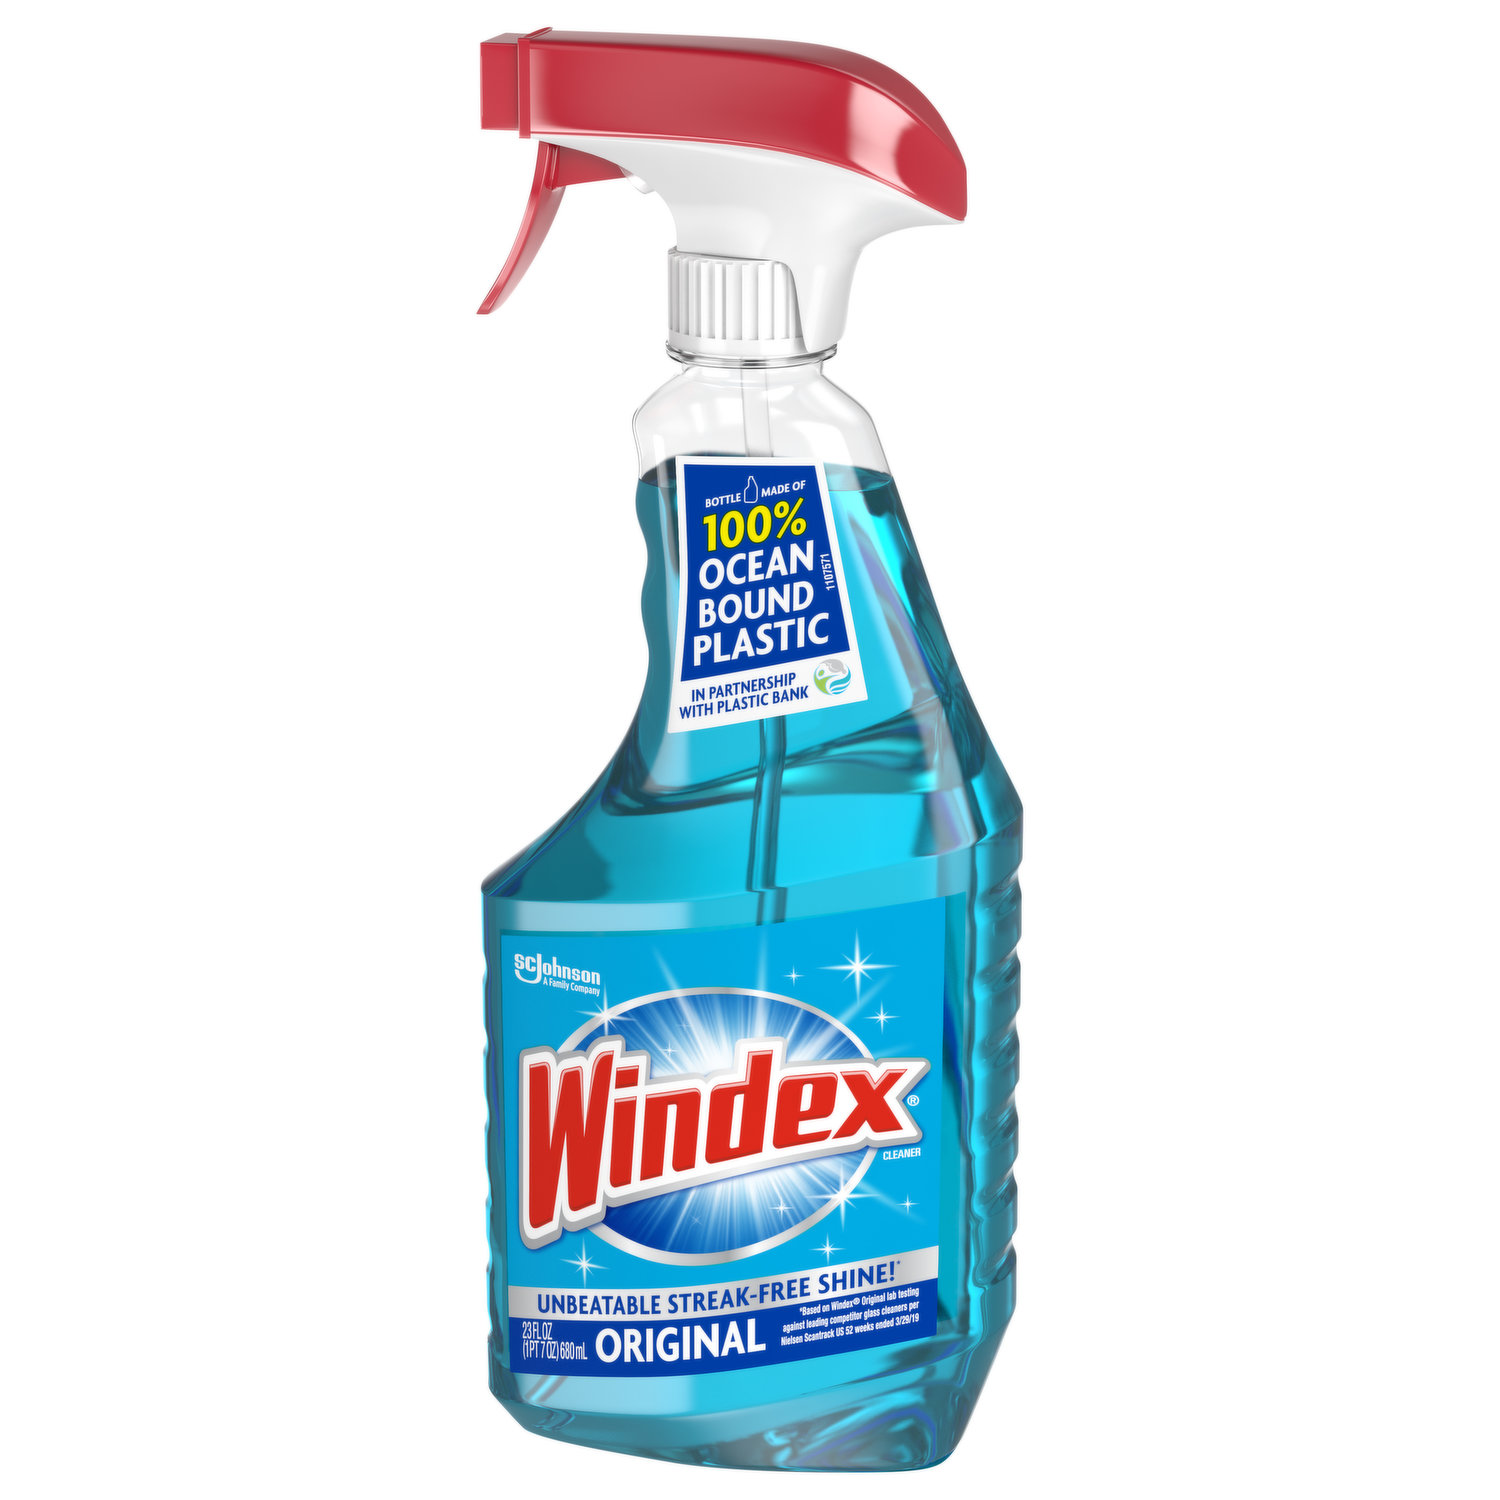 Windex Vinegar MultiSurface Glass Cleaner, 67.6 fl oz Ingredients